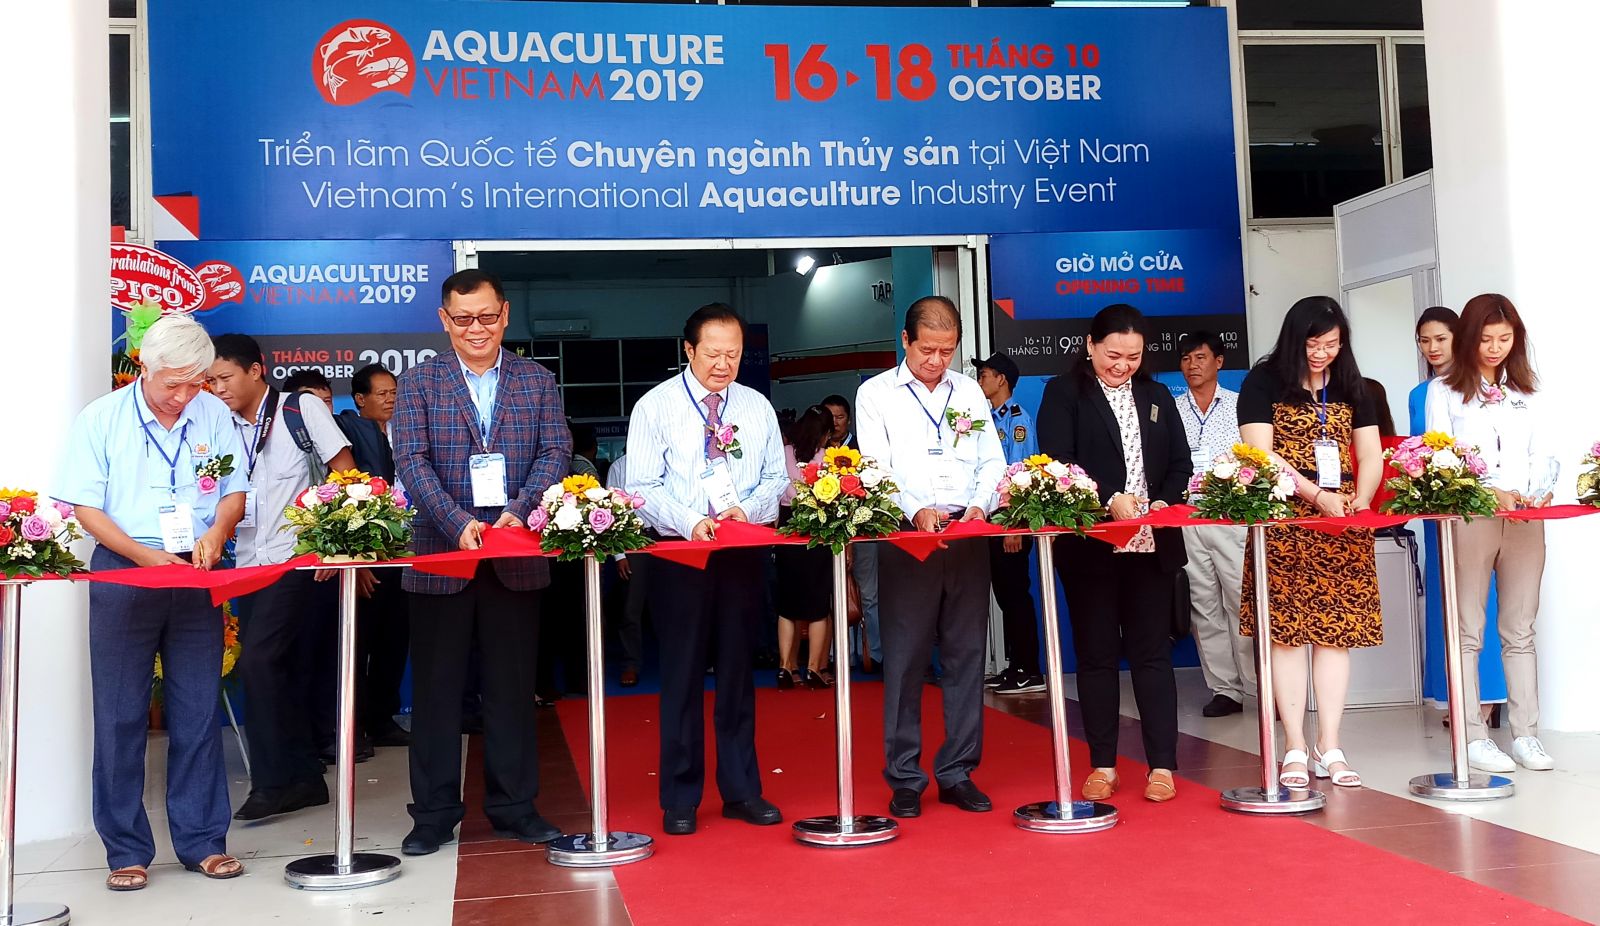 Hình ảnh lễ khai mạc Aquaculture Việt Nam